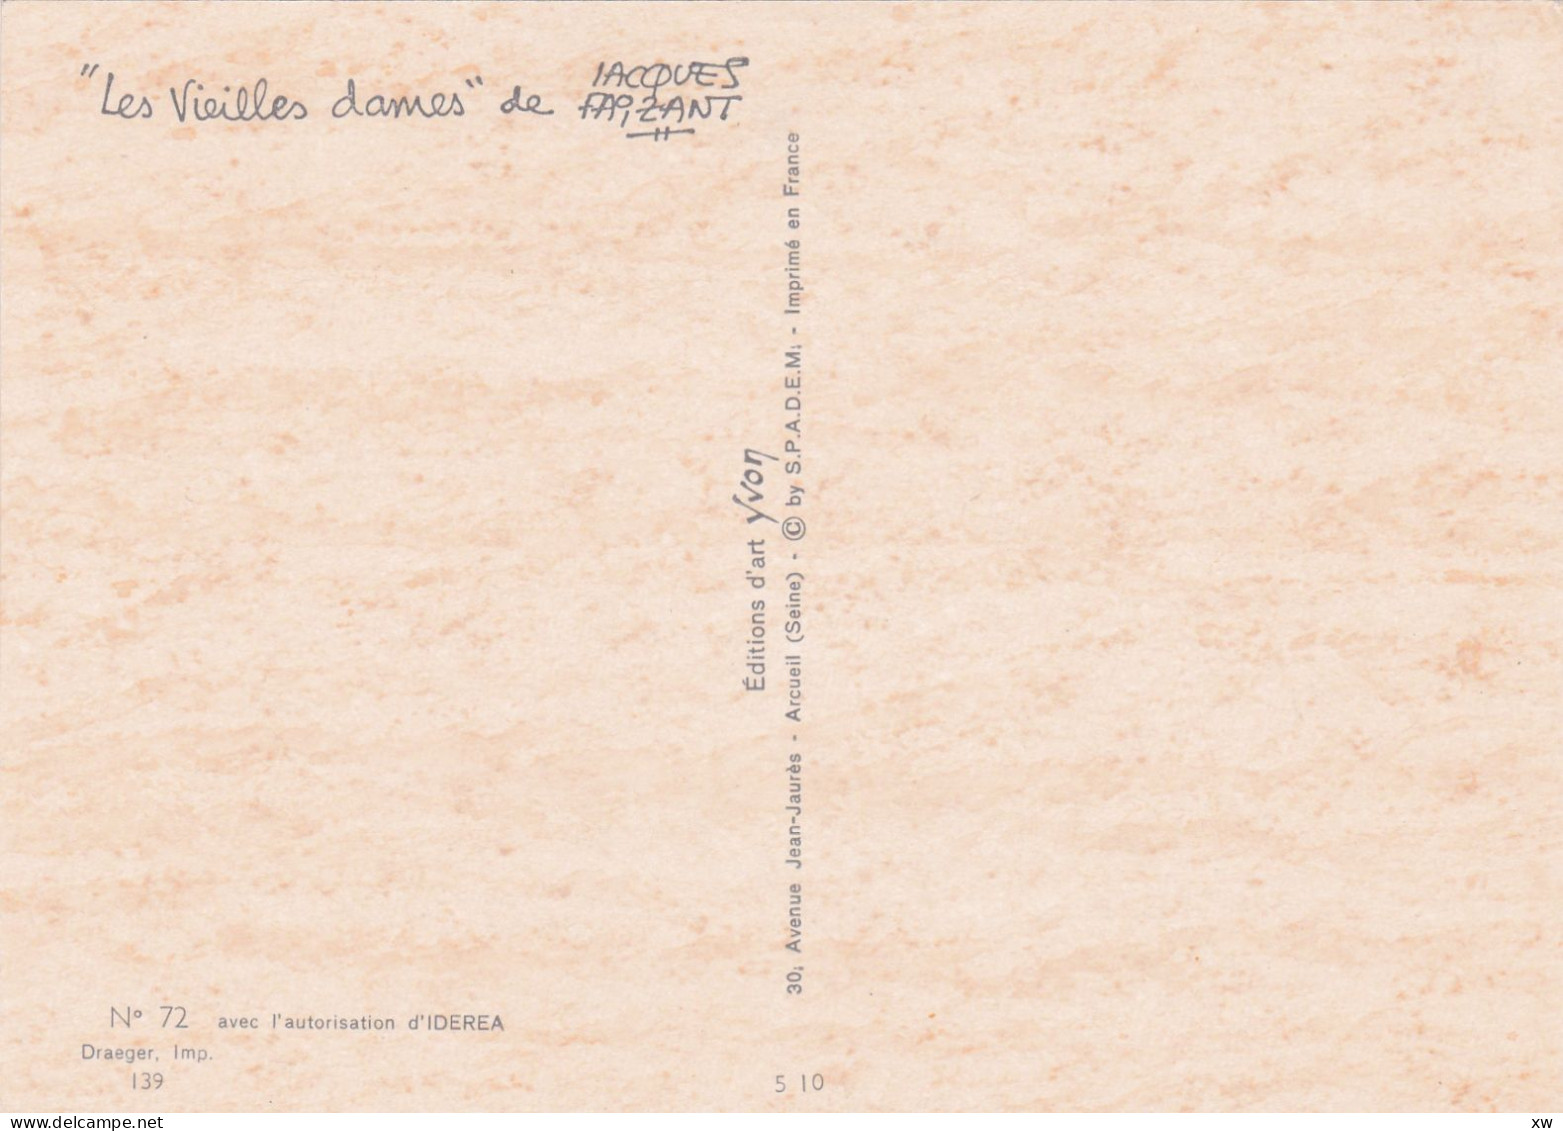 ILLUSTRATEUR - Jacques Faizant -10 CPM - "Les Vieilles Dames"  n°37-38-39-40-41-72-73-74-75-76 - 21-04-24